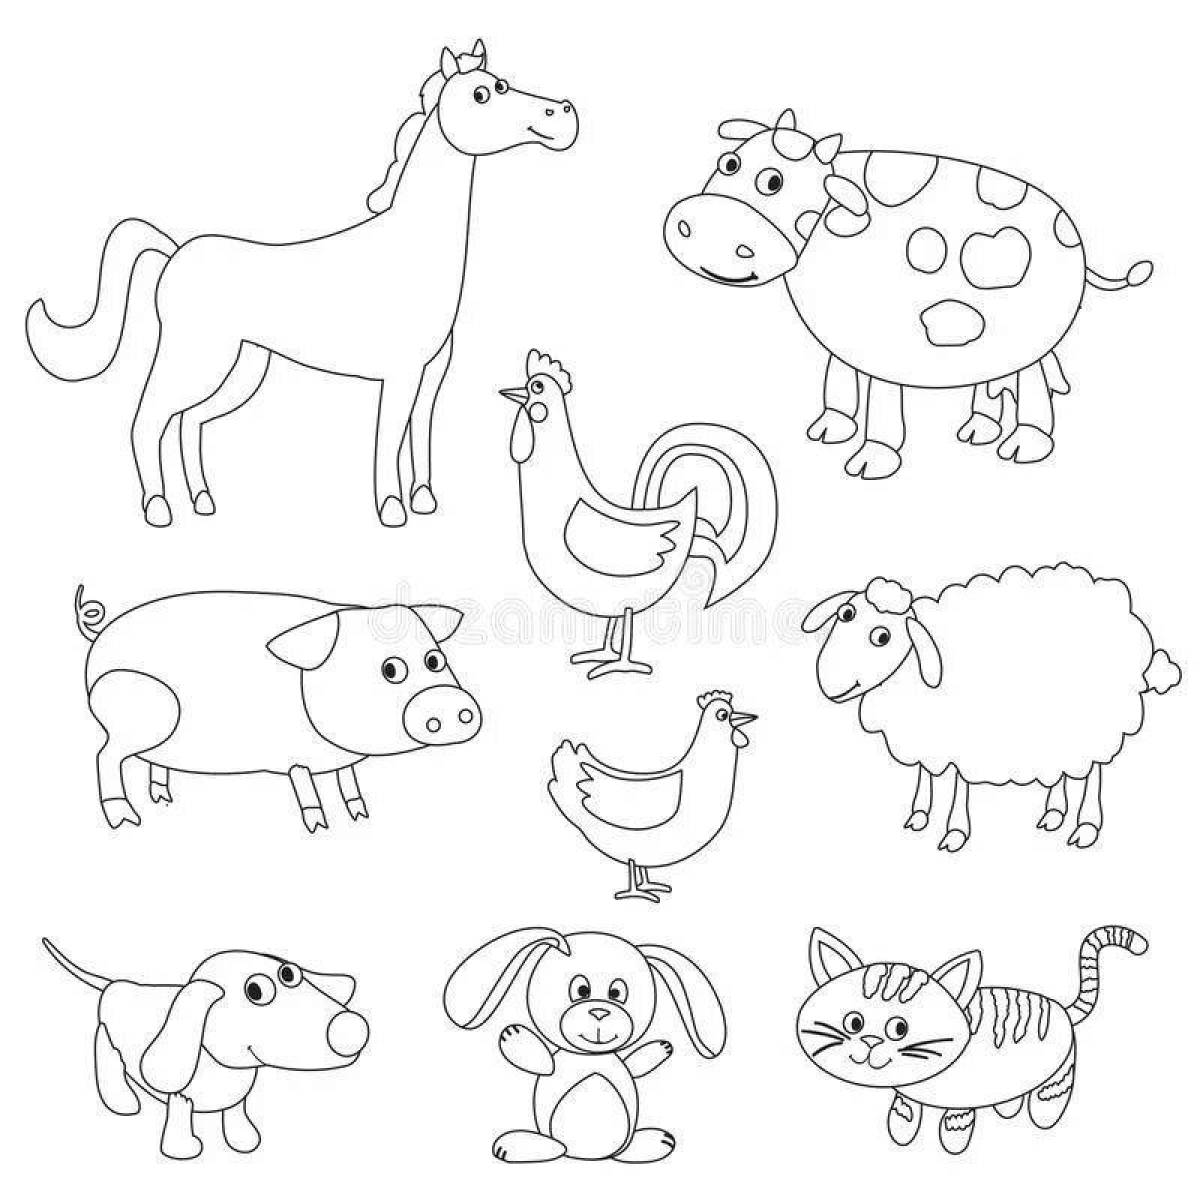 Великолепная раскраска домашние животные для детей 5-6 лет